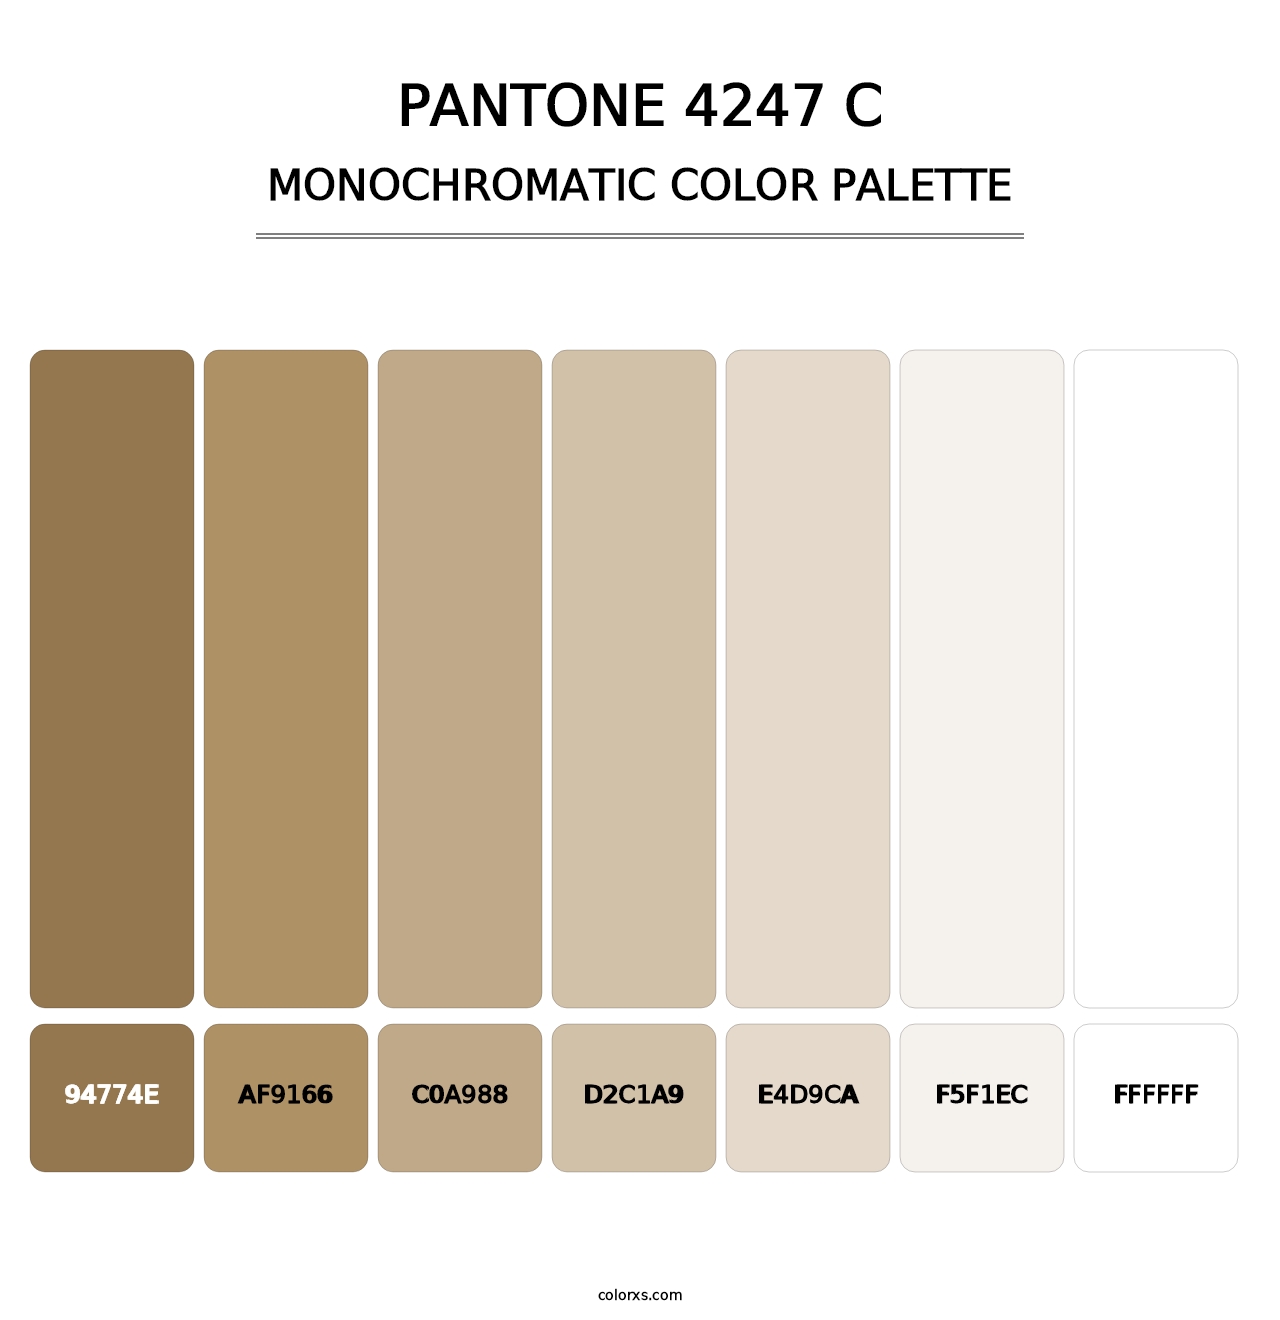 PANTONE 4247 C - Monochromatic Color Palette